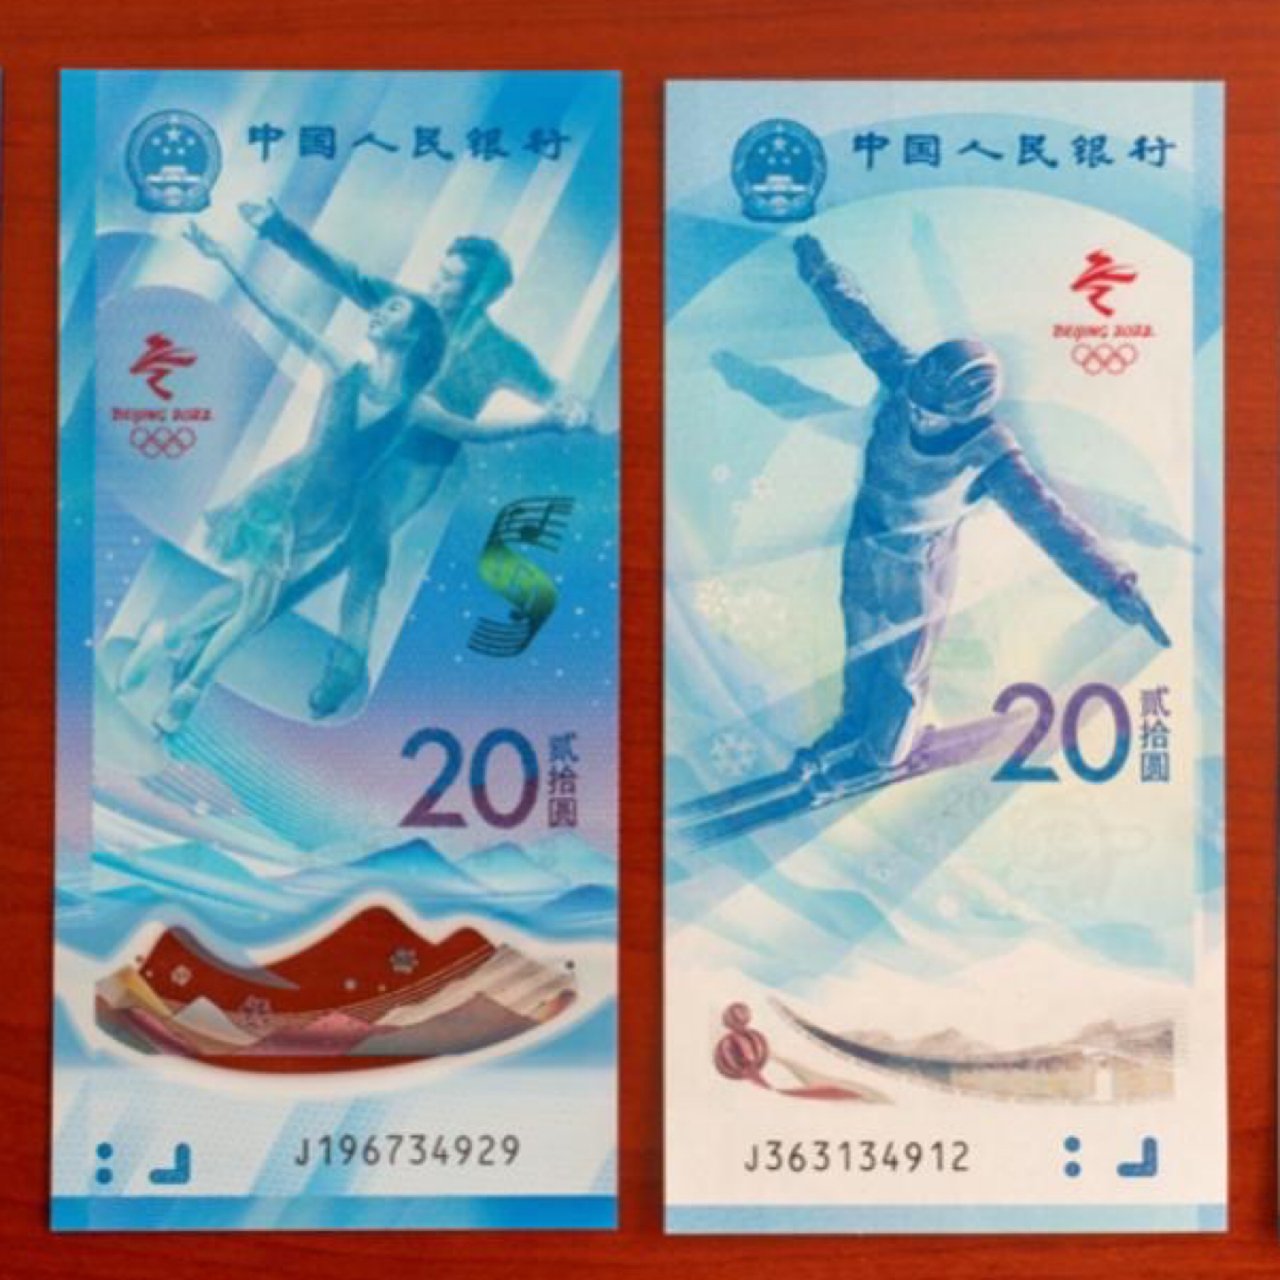 北京冬奥的另一款“大热周边”——
“冬奥...